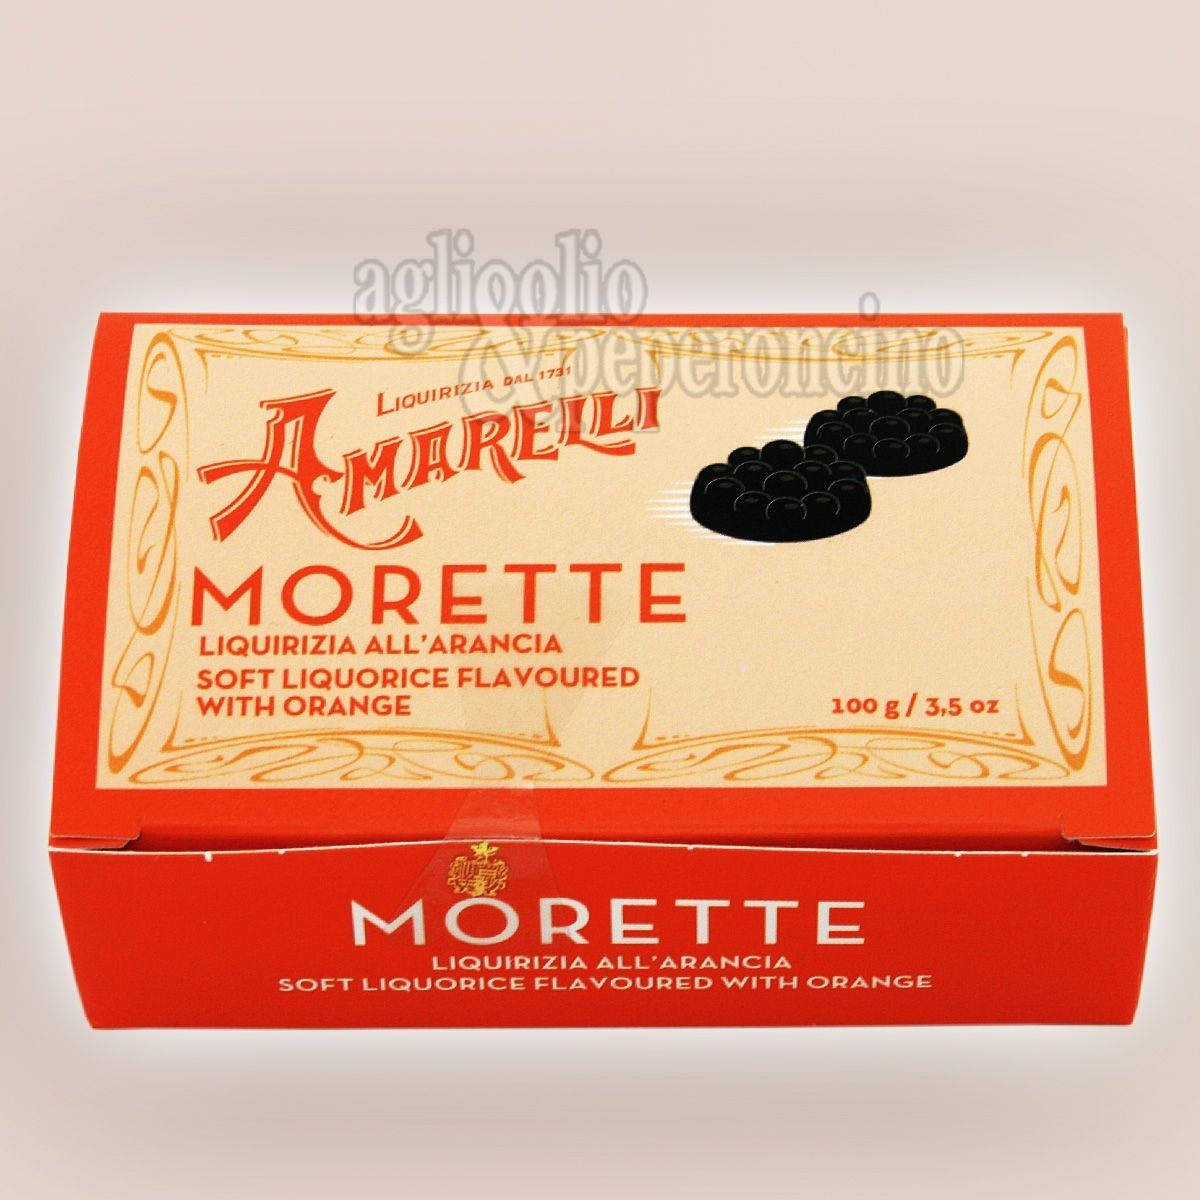 Amarelli Morette all'arancia in scatola da 100g - Liquirizia calabrese morbida aromatizzata all'arancia